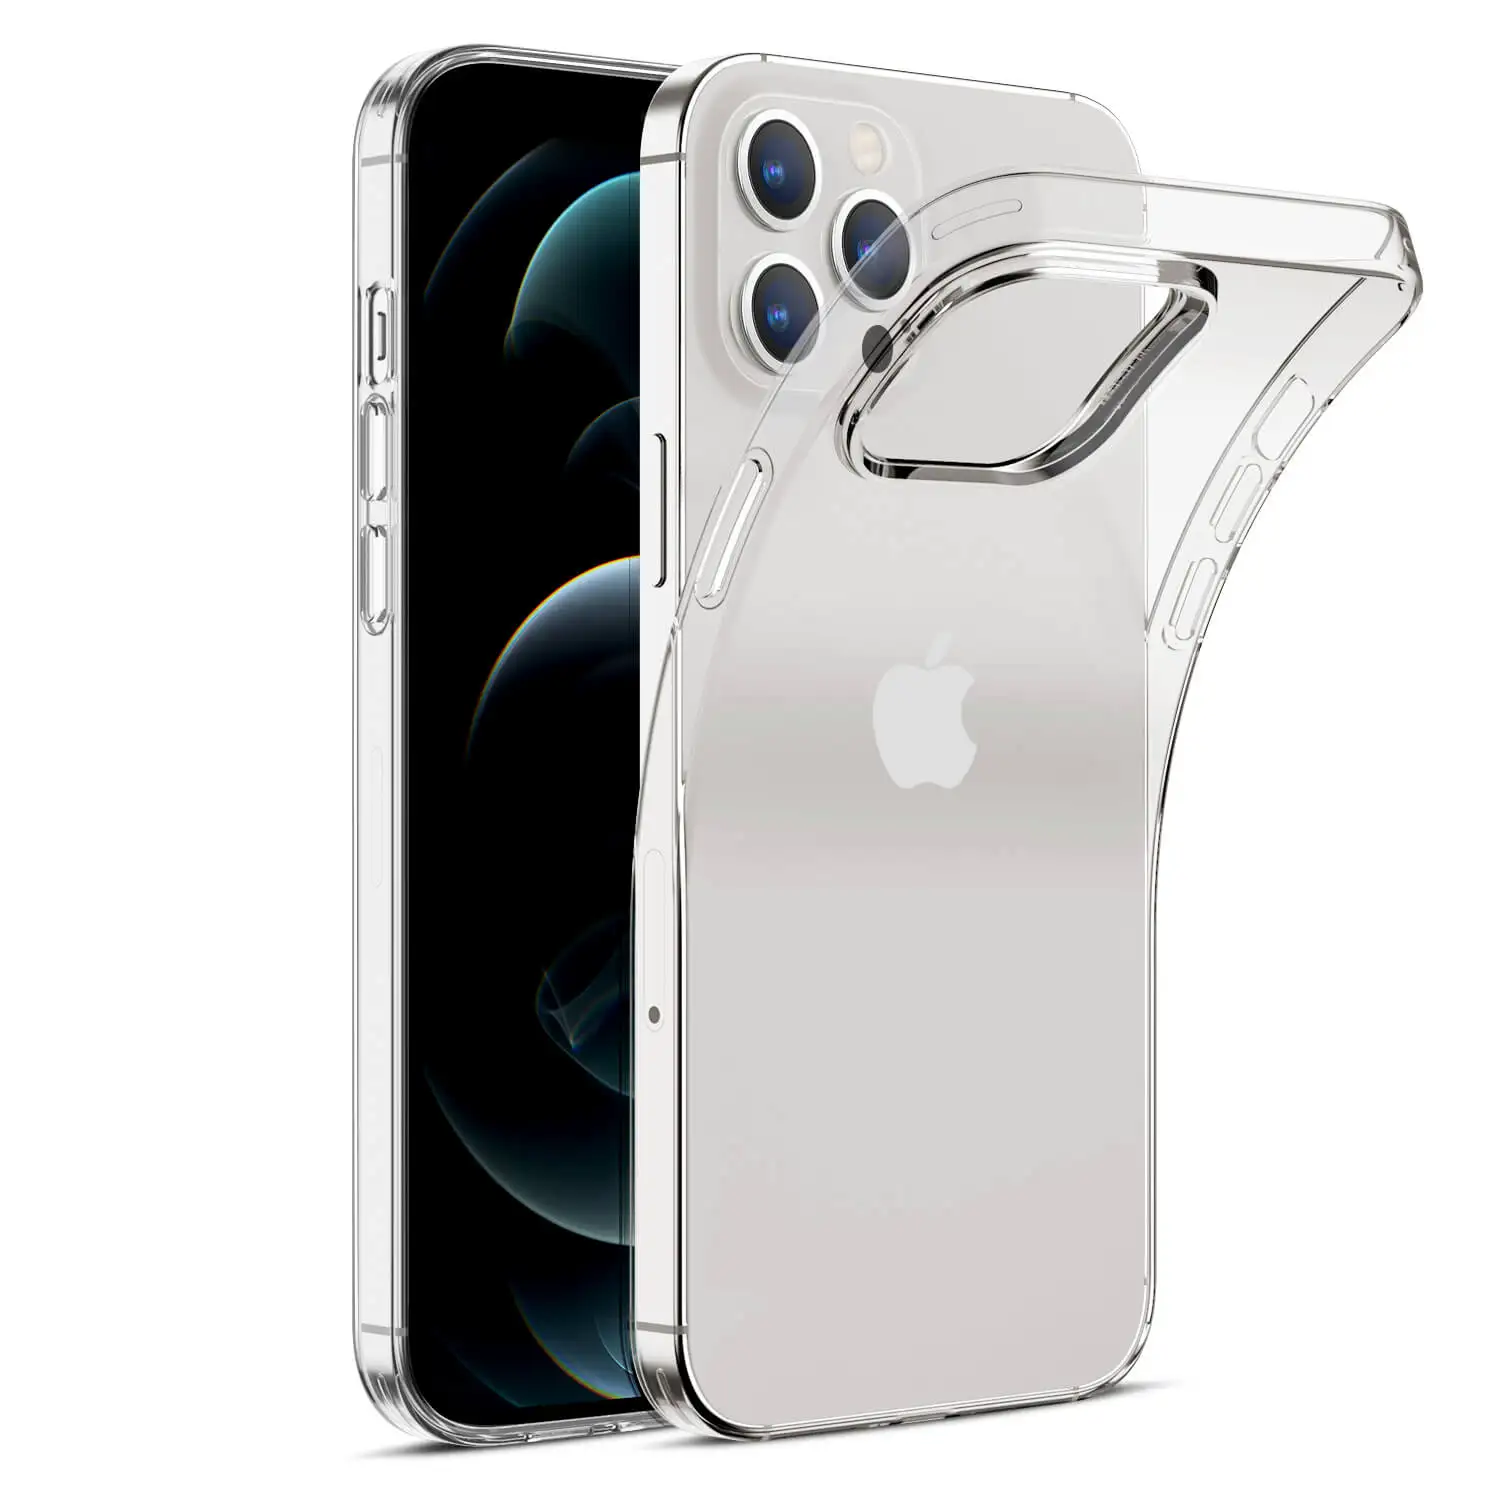 Carcasa de TPU transparente suave para iPhone 12 Pro Max